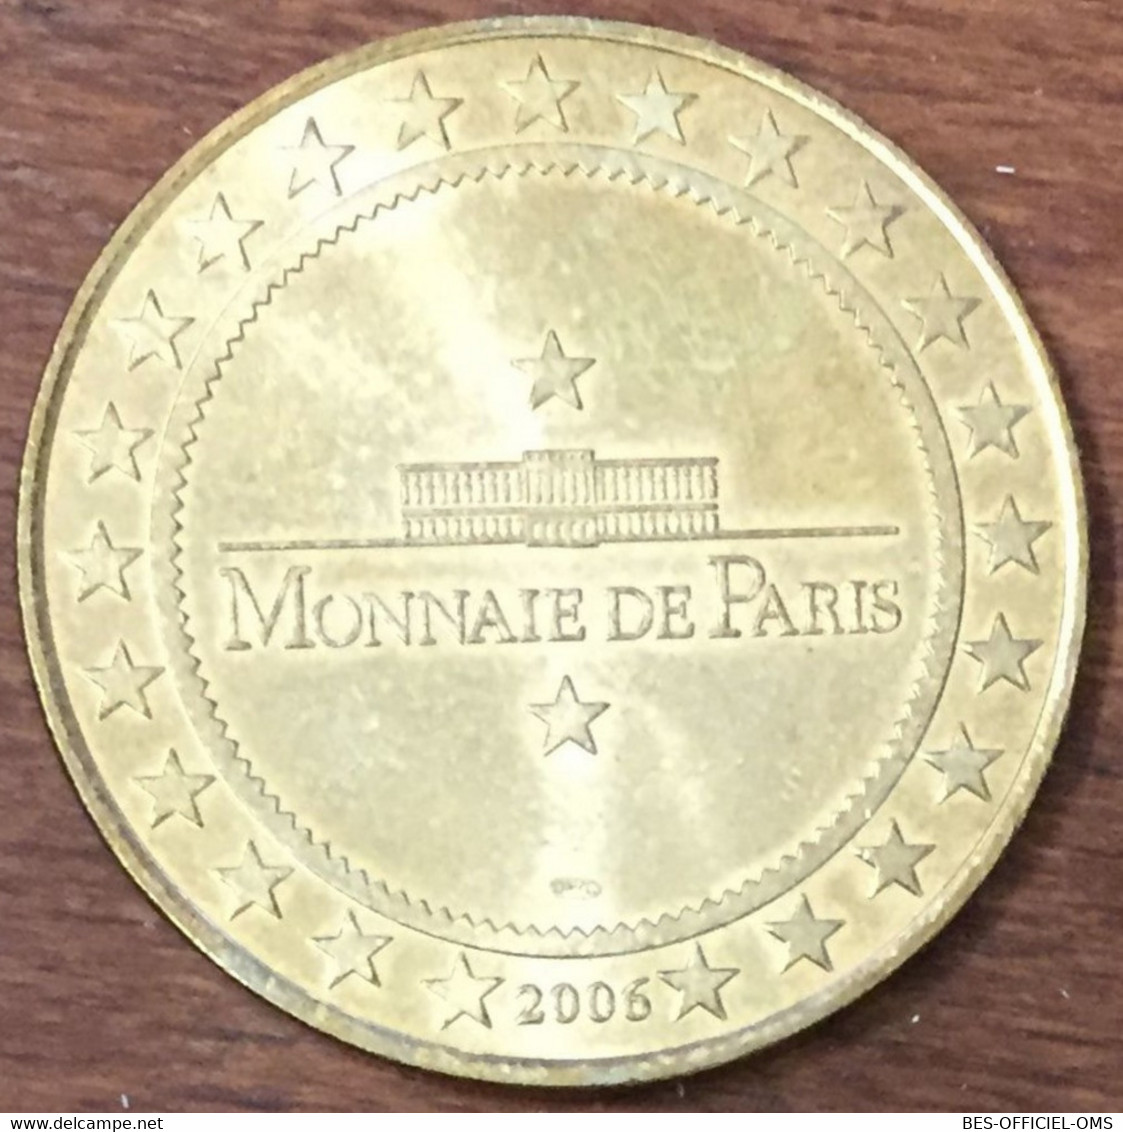 24 CHÂTEAU DE BIRON MDP 2006 MEDAILLE SOUVENIR MONNAIE DE PARIS JETON TOURISTIQUE MEDALS COINS TOKENS - 2006